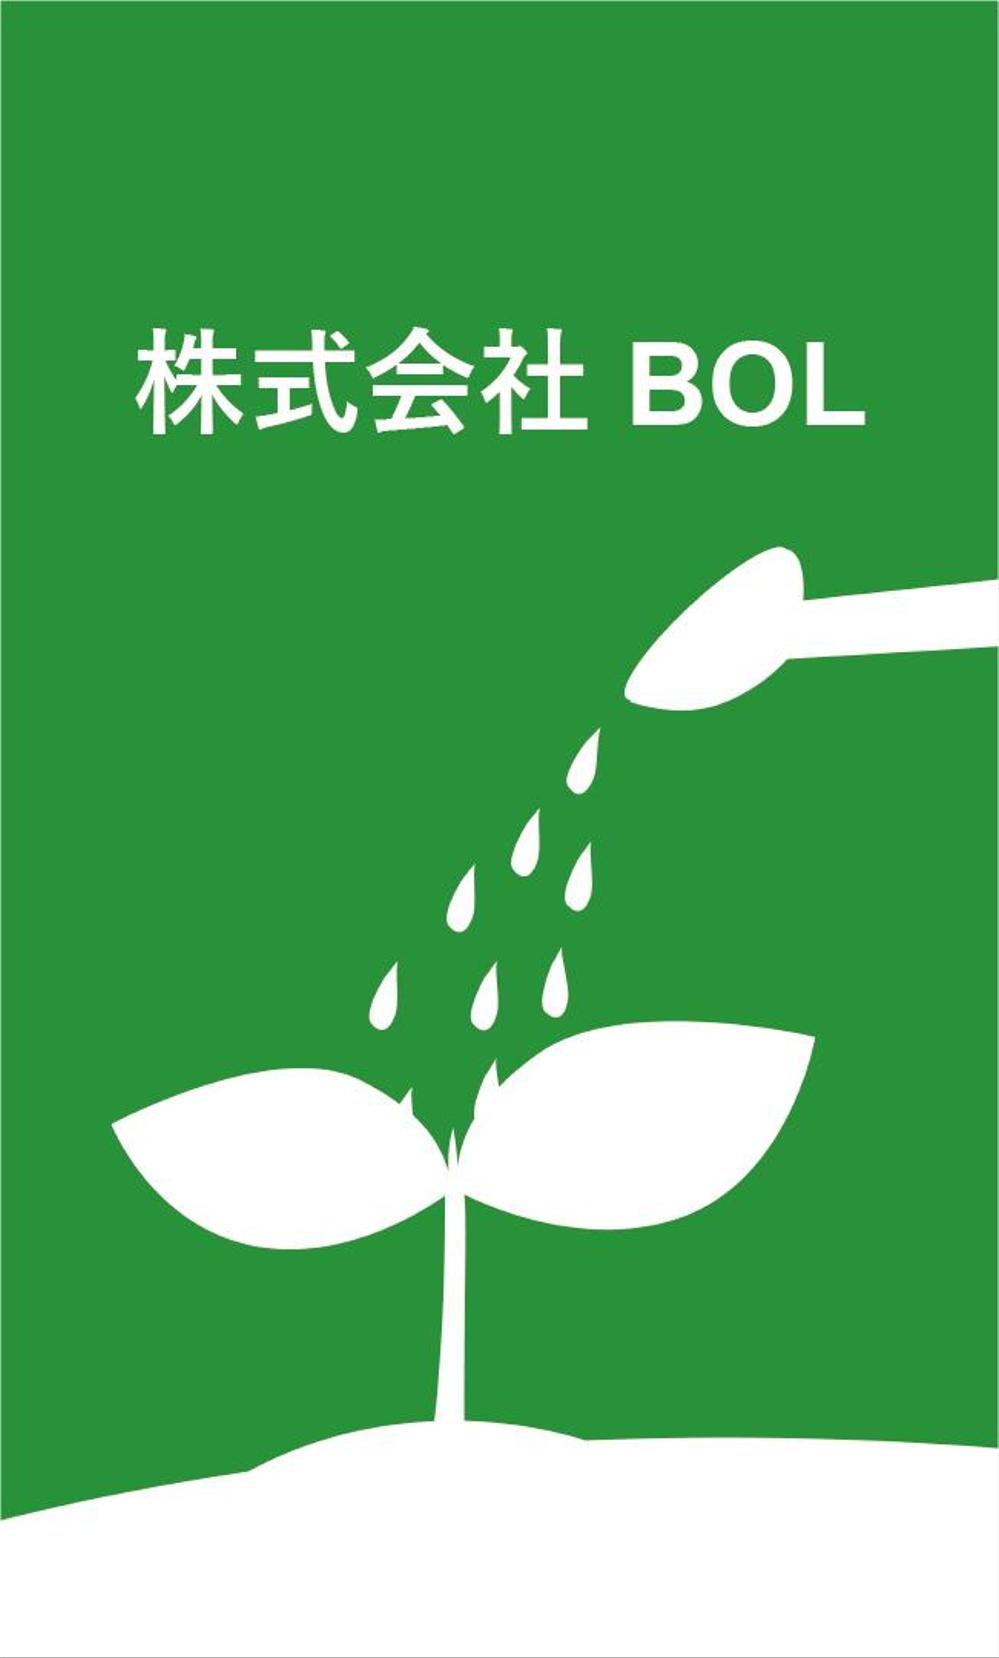 農業を基本とした「株式会社　BOL」の名刺デザイン